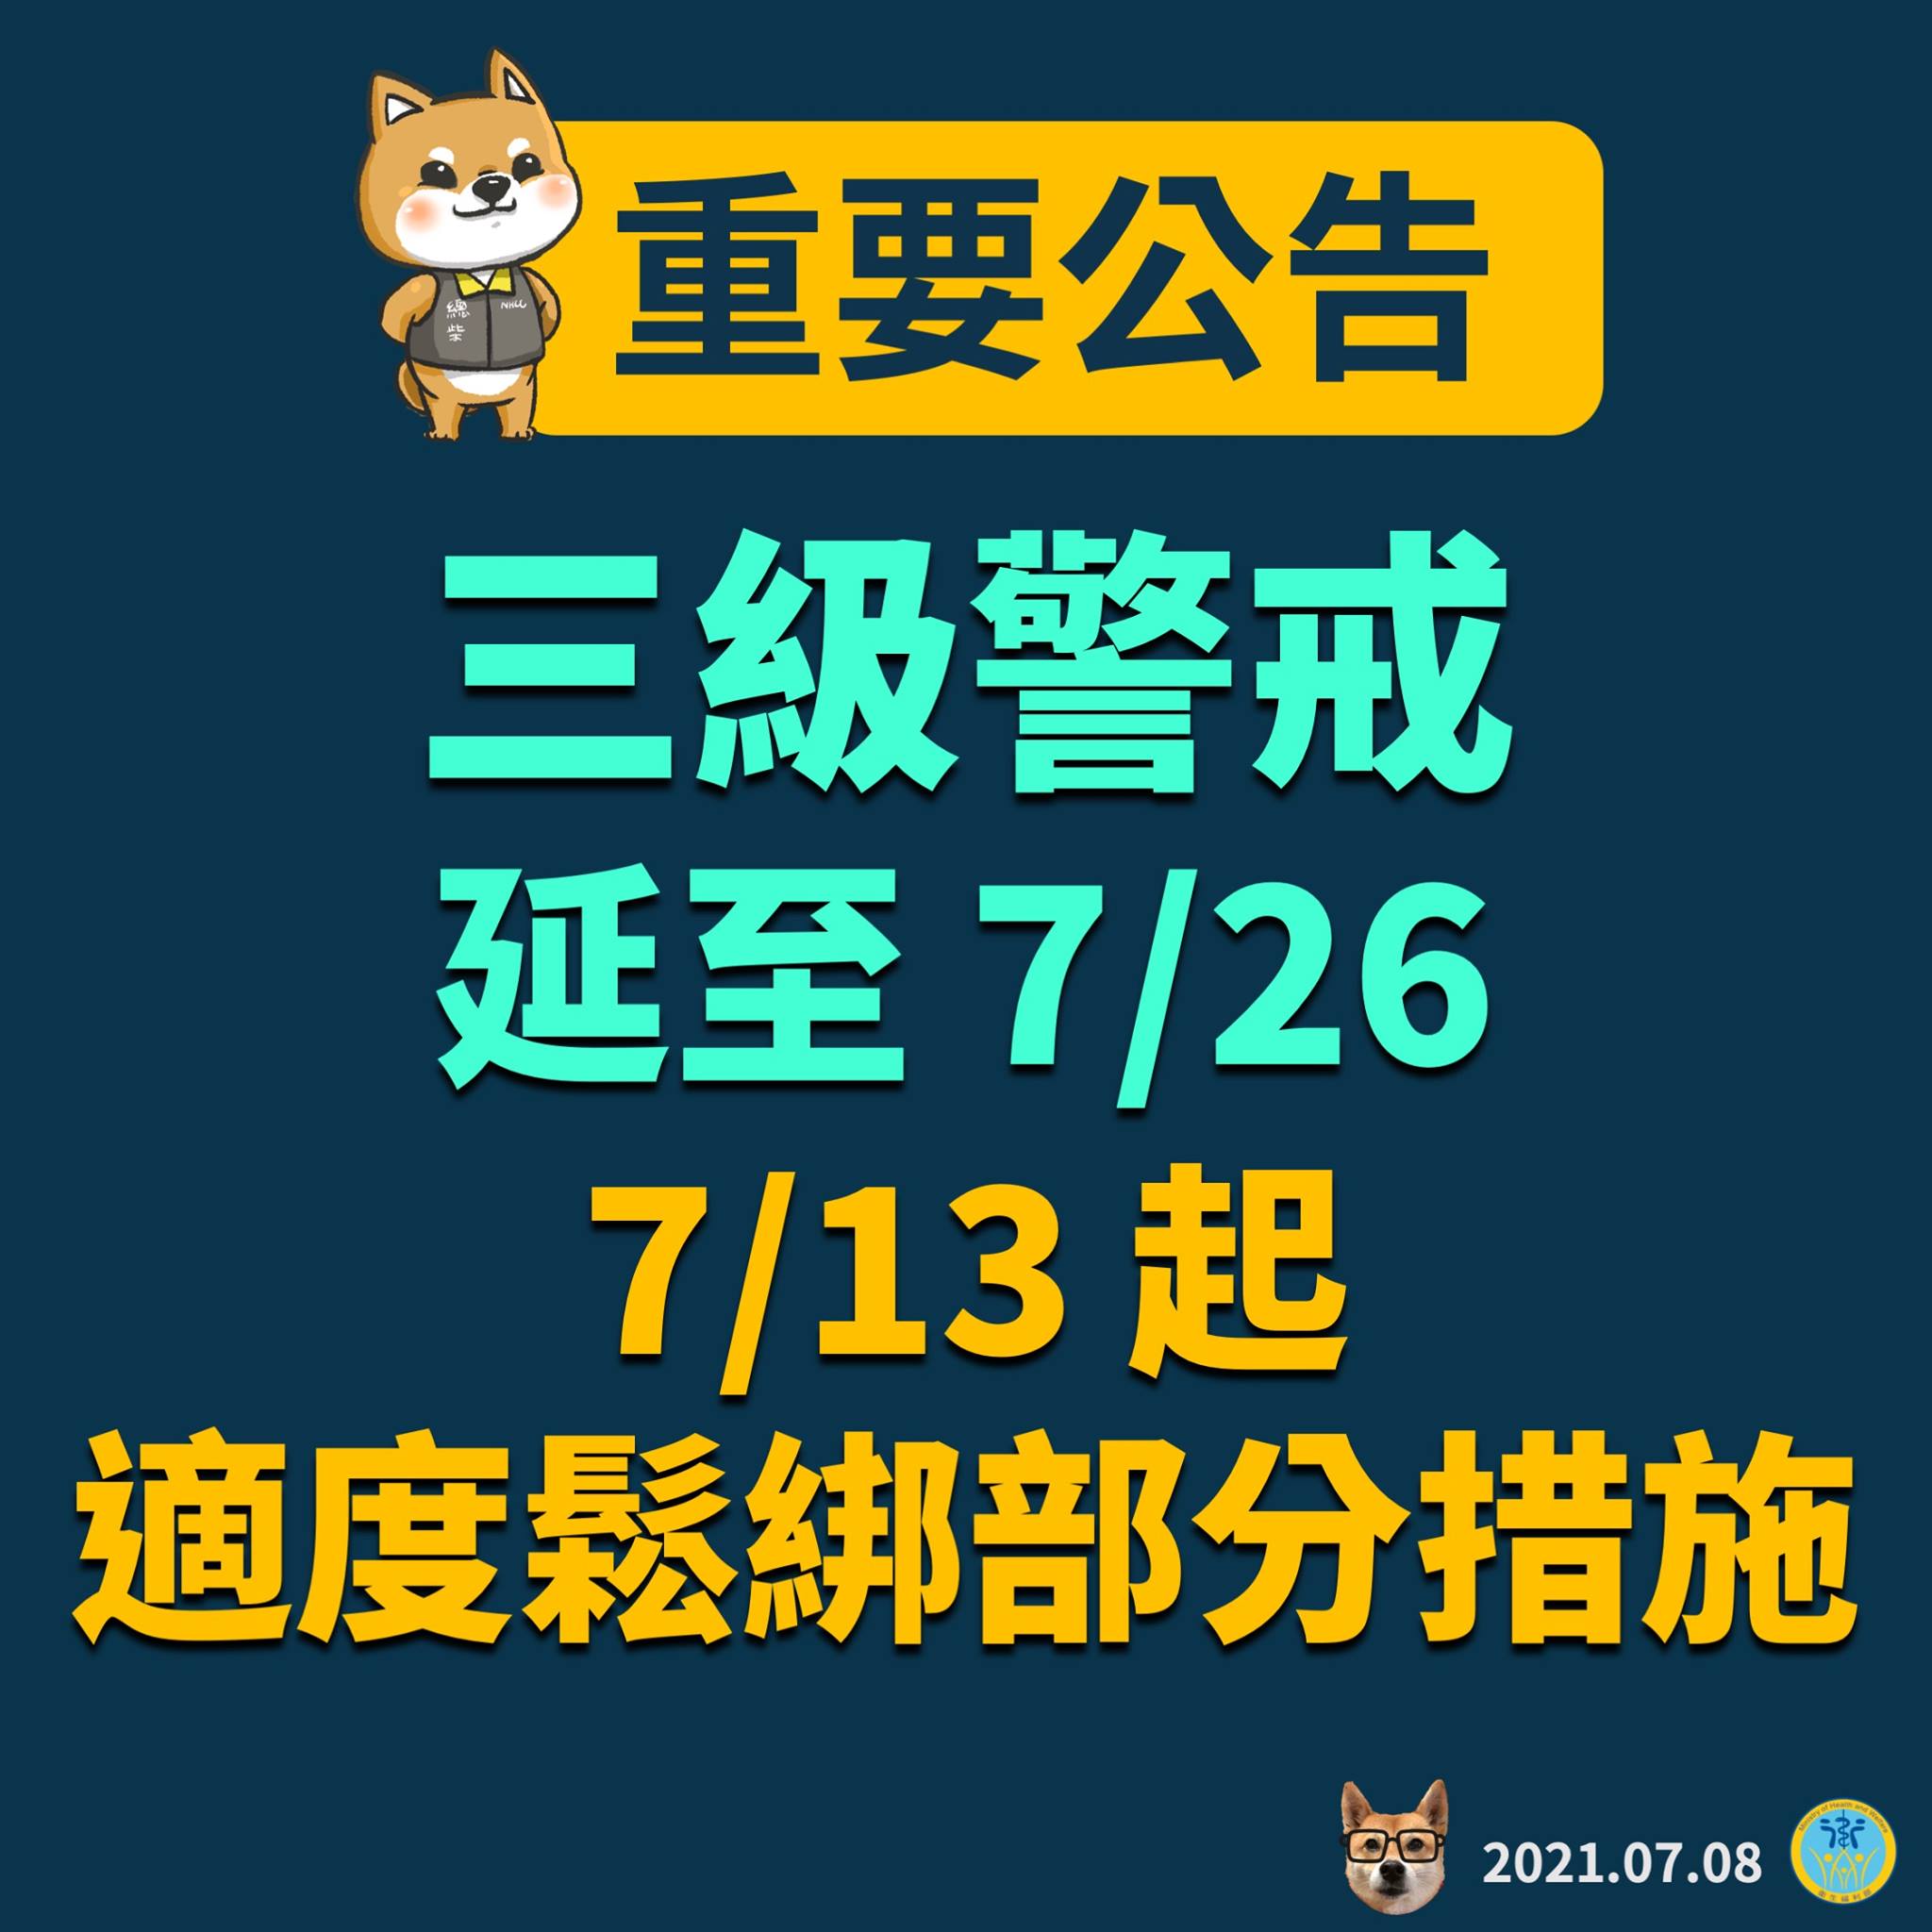 台湾ソフトパワー - 2021-07-13_台湾の防疫対策、警戒レベル3級も7/13から一部規制緩和へ